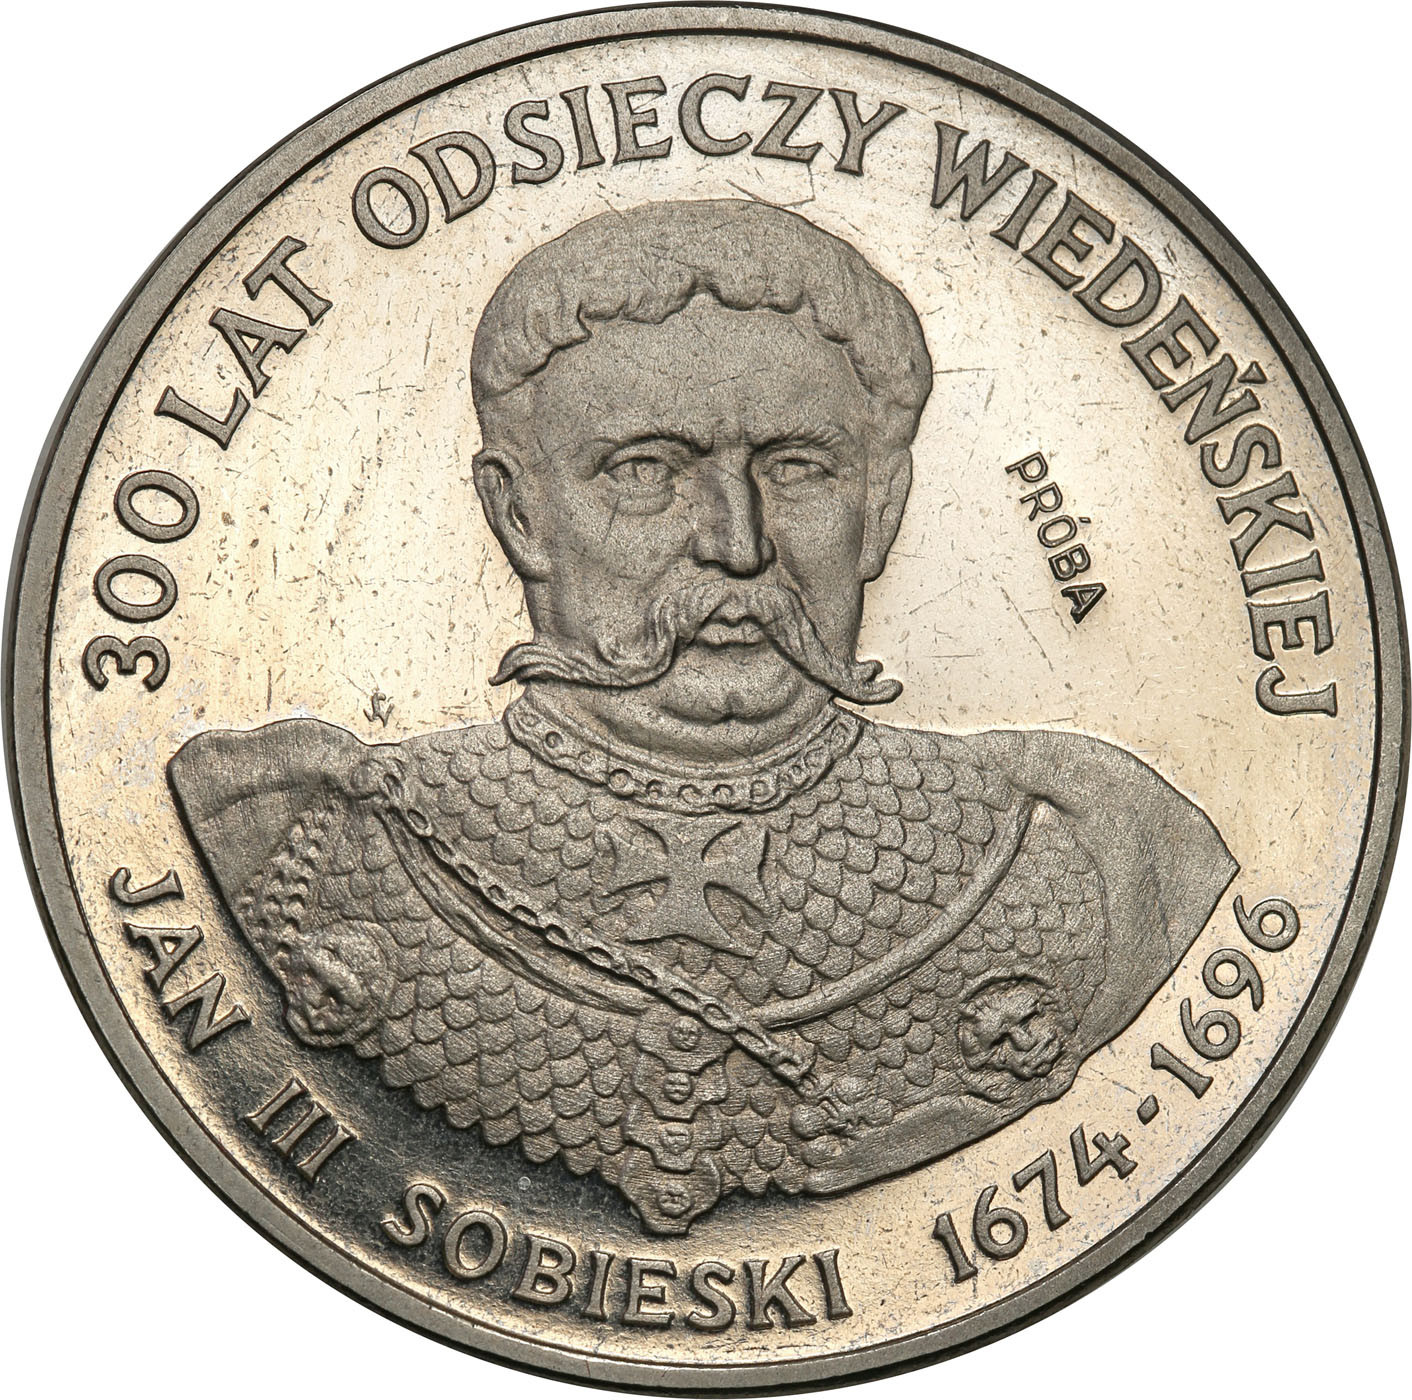 PRL. PRÓBA Nikiel 200 złotych 1983 – Odsiecz Wiedeńska – Jan III Sobieski